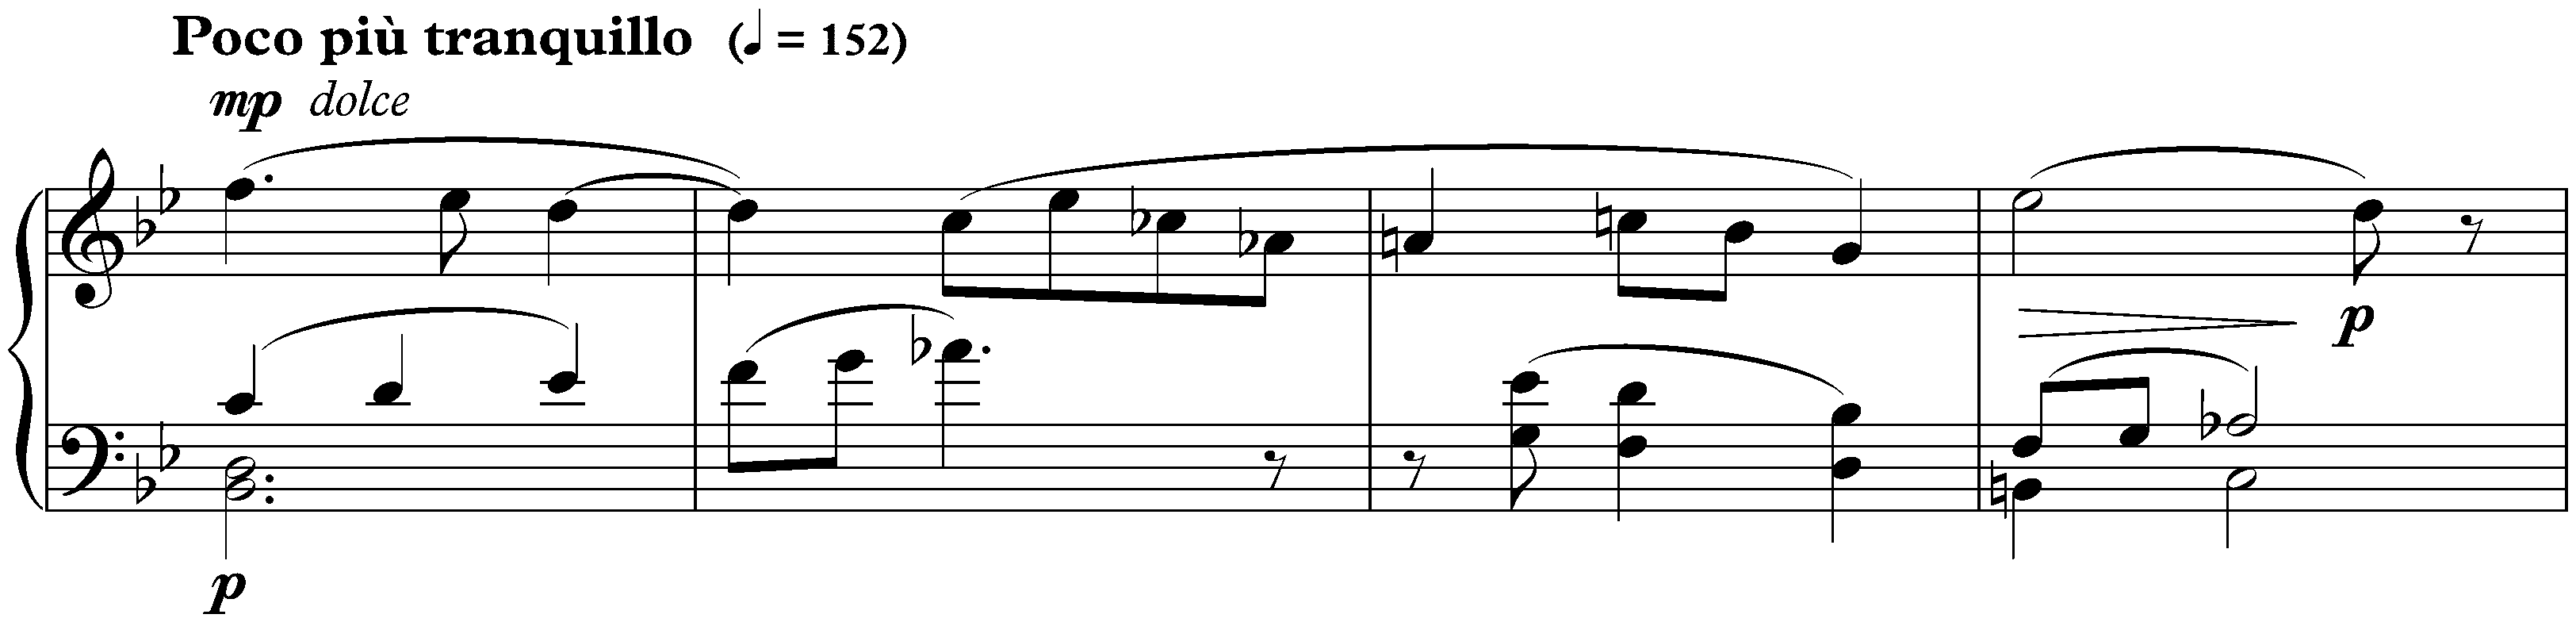 Sonatina in G major, op. 54 no. 2; 3. Allegro, ma non troppo